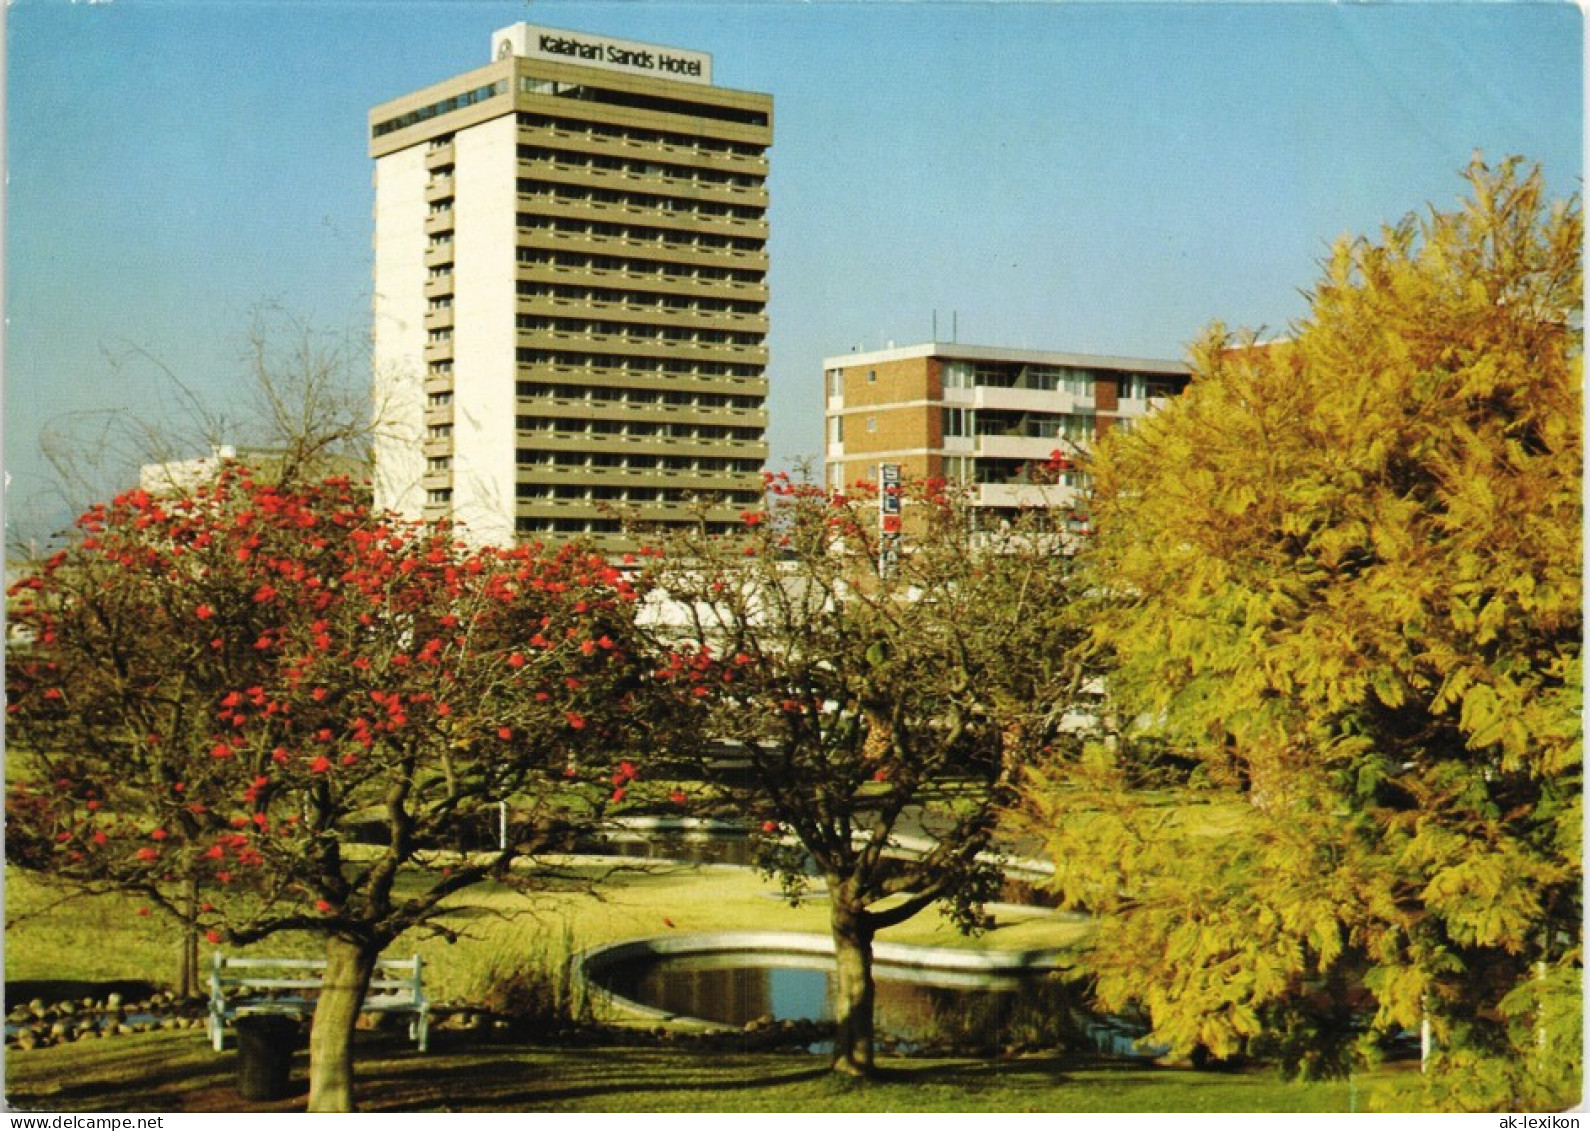 Postcard Windhuk Windhoek Kalaharl Sands Hotel, SWA Namibia Afrika 1965 - Namibie